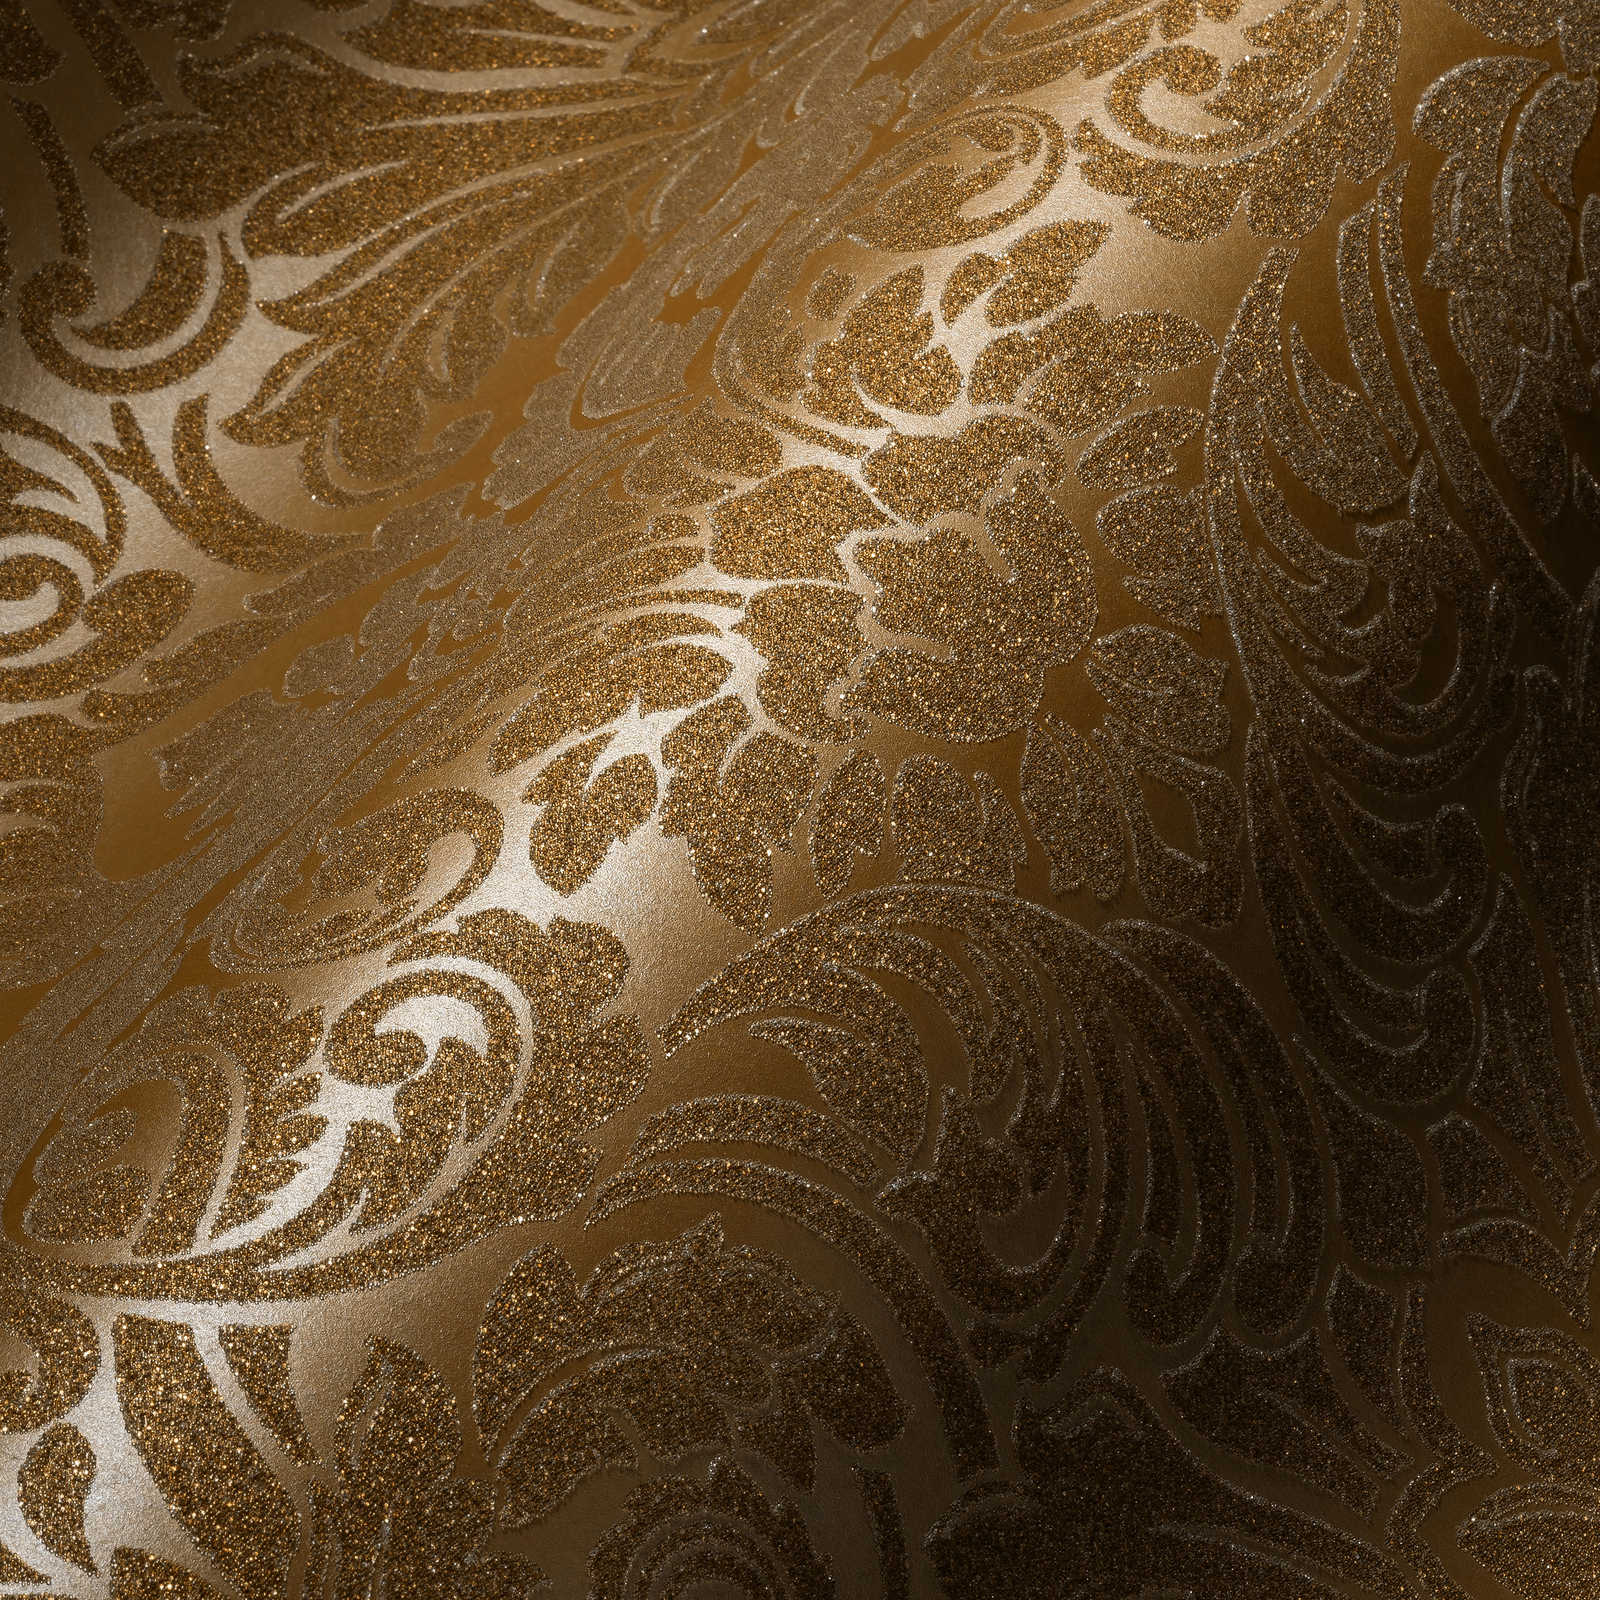             Papier peint ornemental effet métallique & design floral - or
        